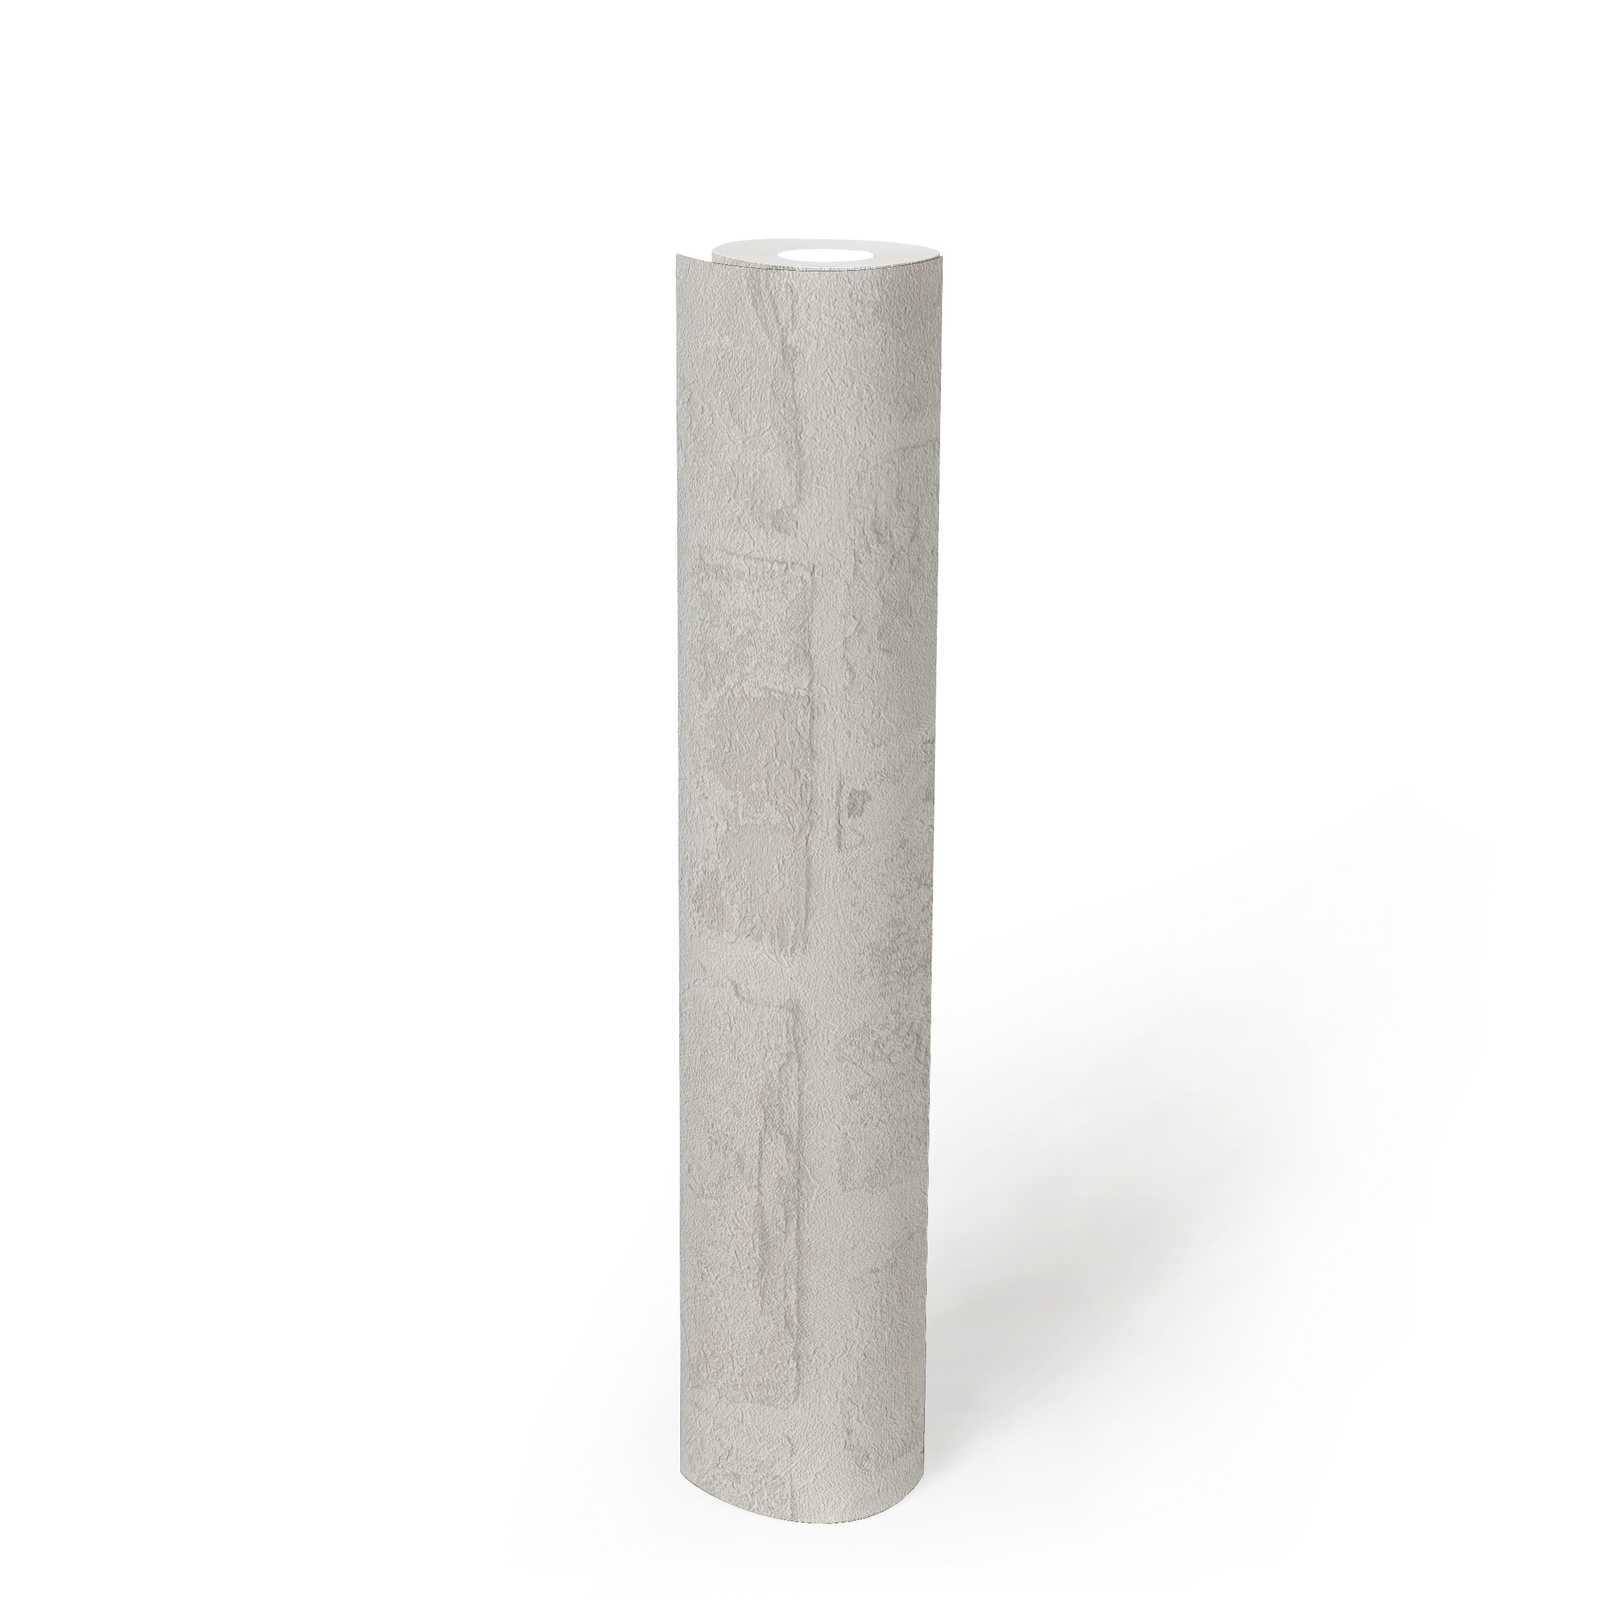             Papier peint intissé imitation pierre sans PVC - blanc, gris
        